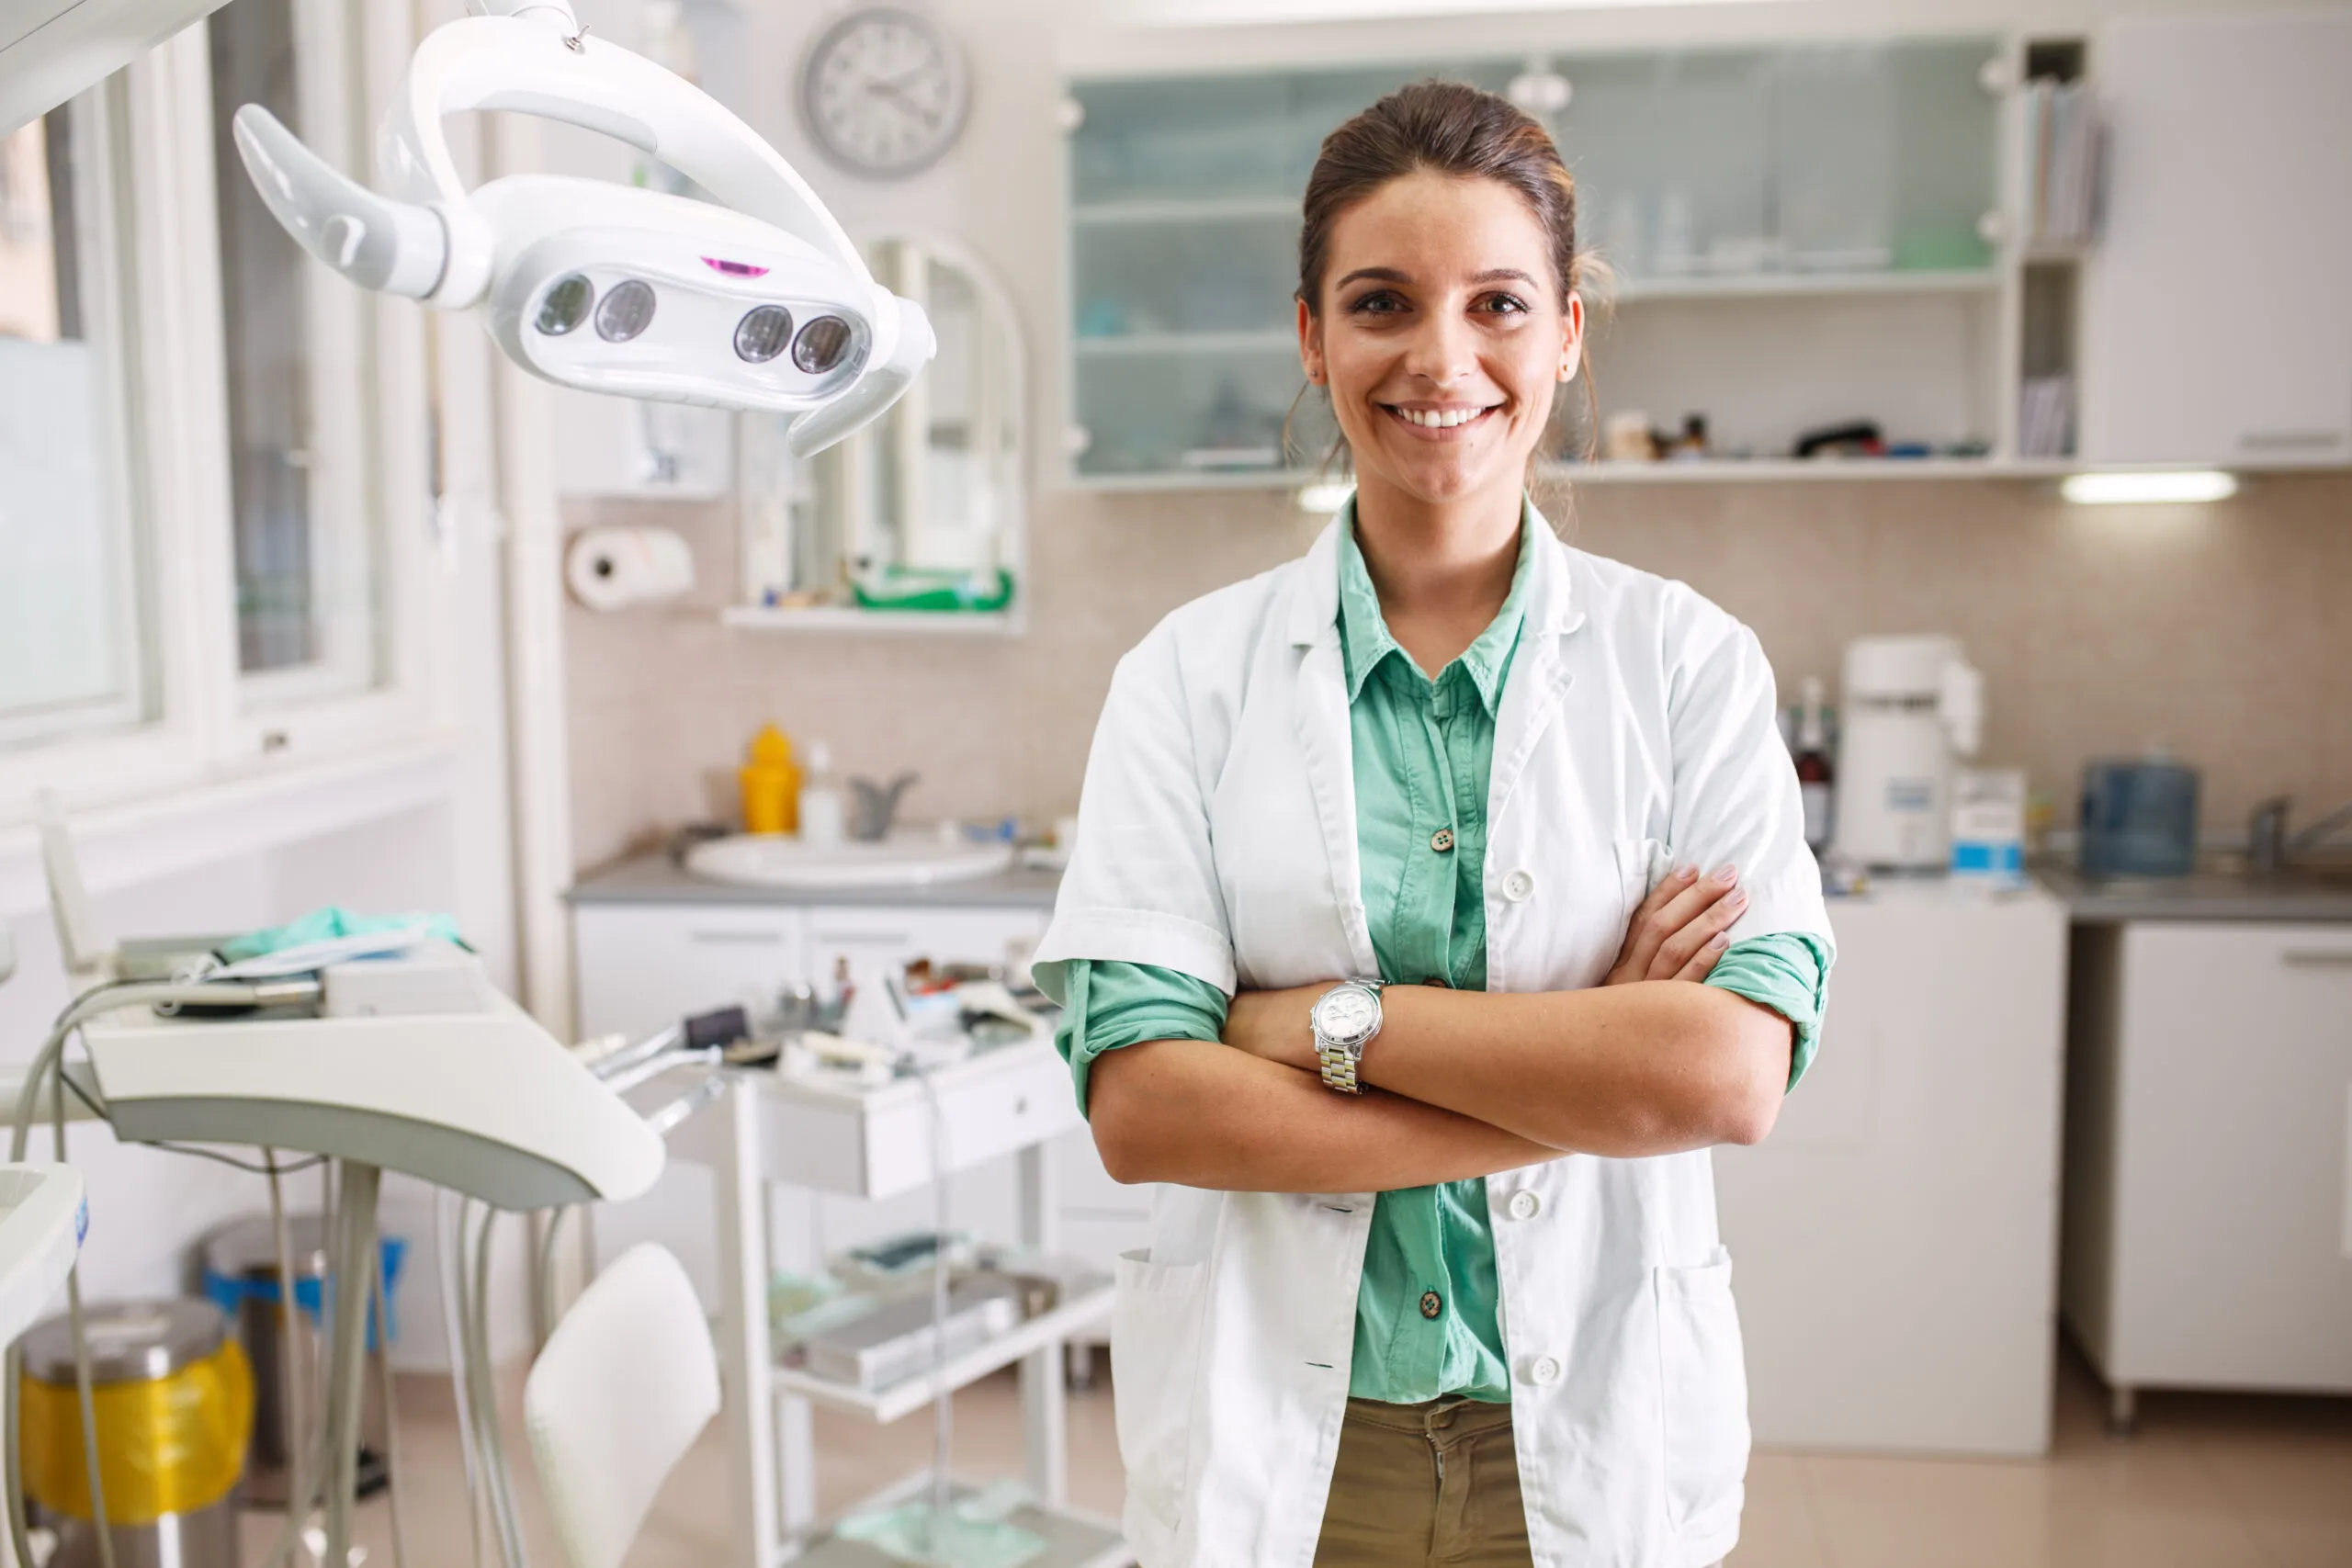 Cómo encontrar una clínica dental gratuita o de bajo costo